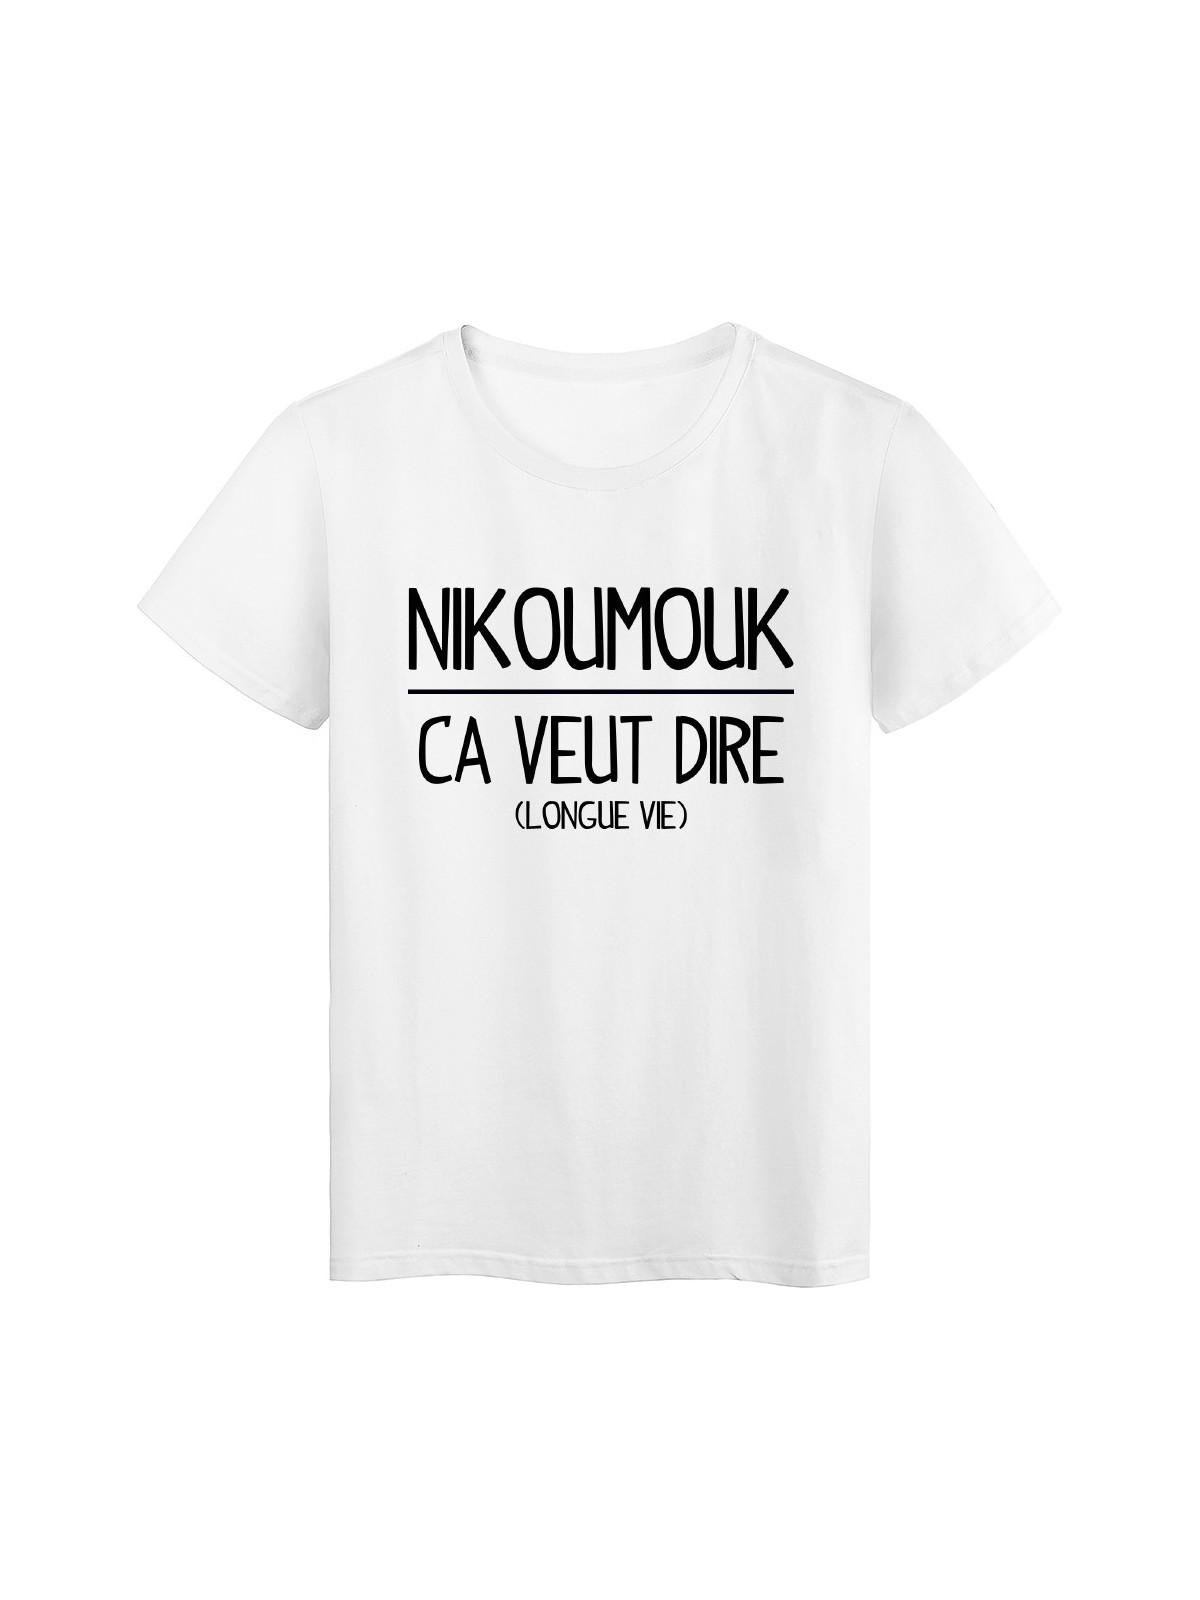 T-Shirt blanc Nikoumouk ca veut dire longue vie 